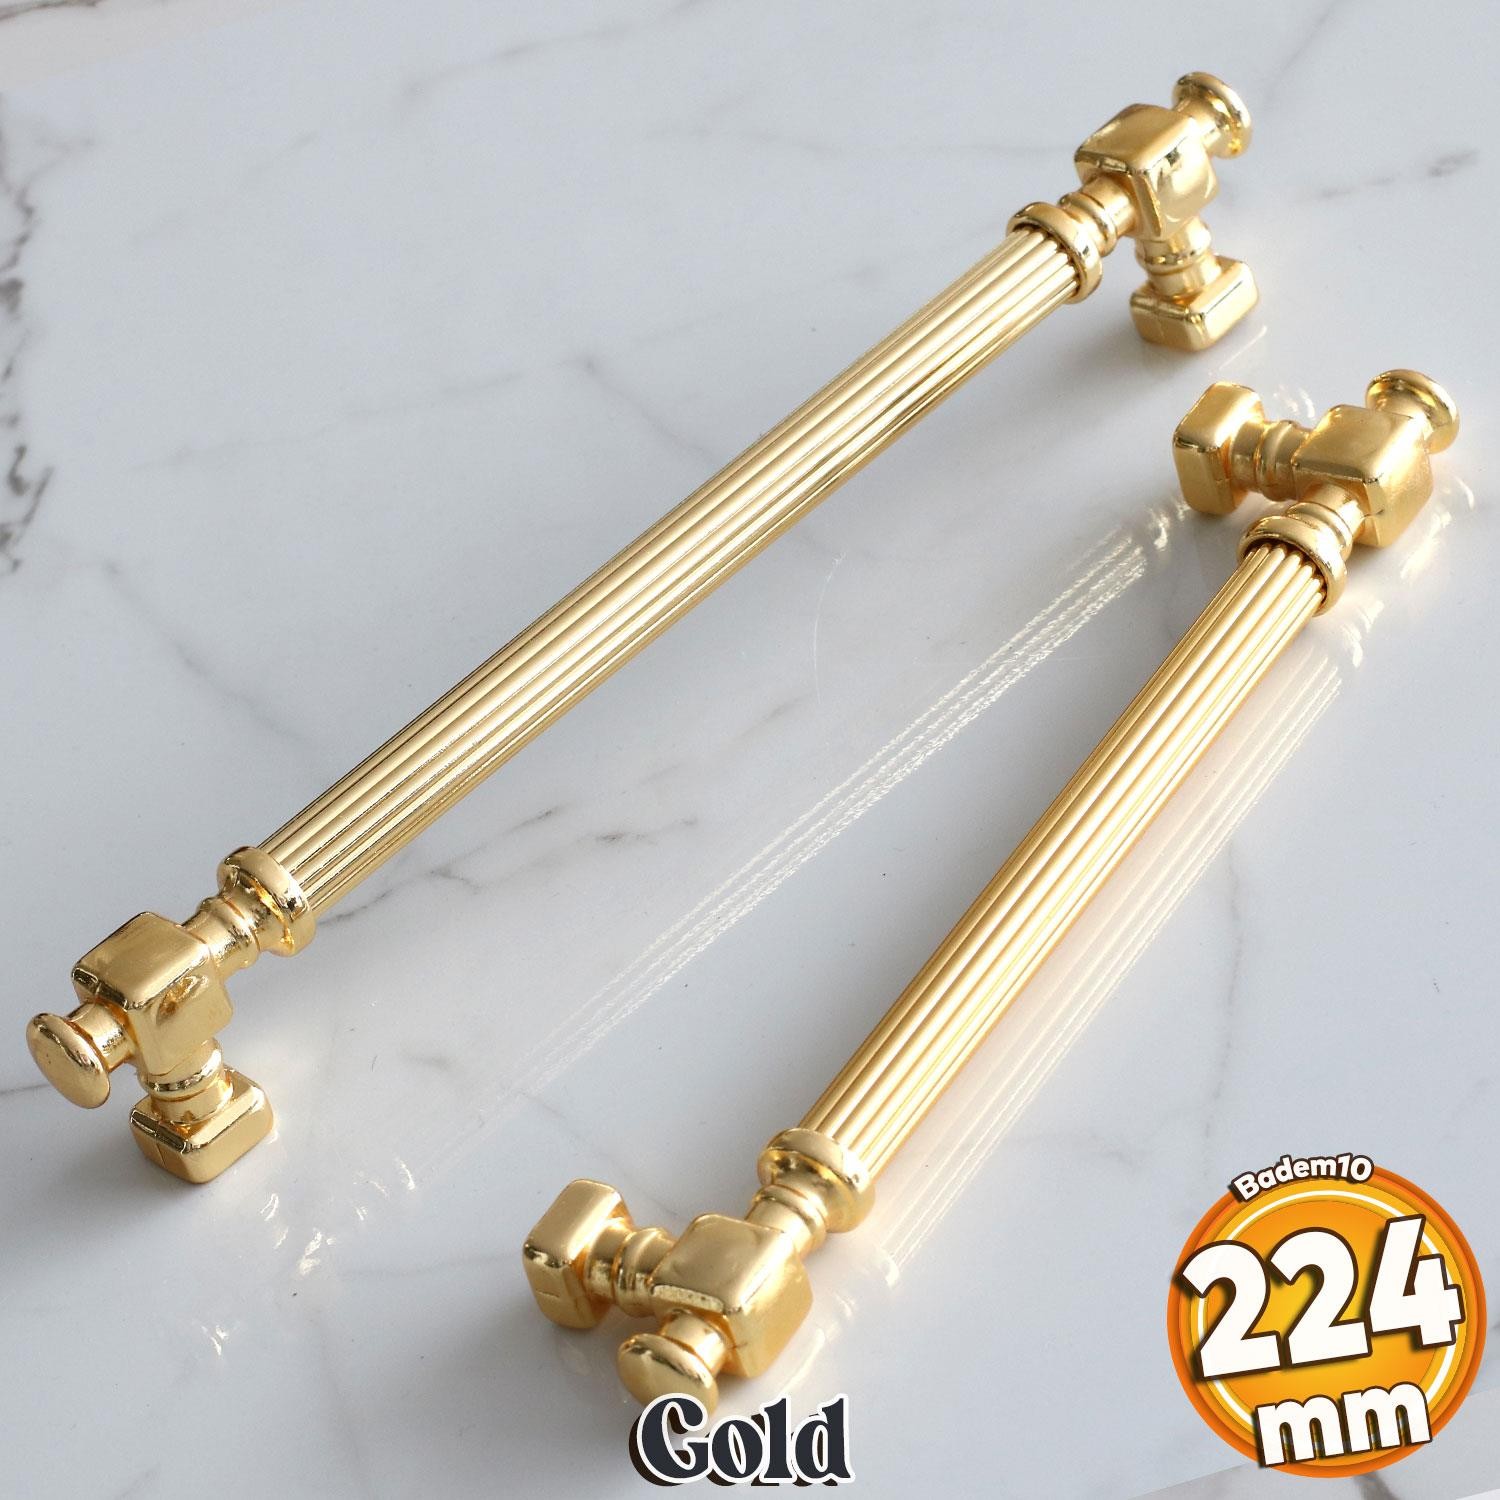 Talas Altın Çizgi Metal Kulp 224 mm 22.4 cm Mobilya Çekmece Mutfak Dolabı Dolap Kapak Kulpları Kulbu